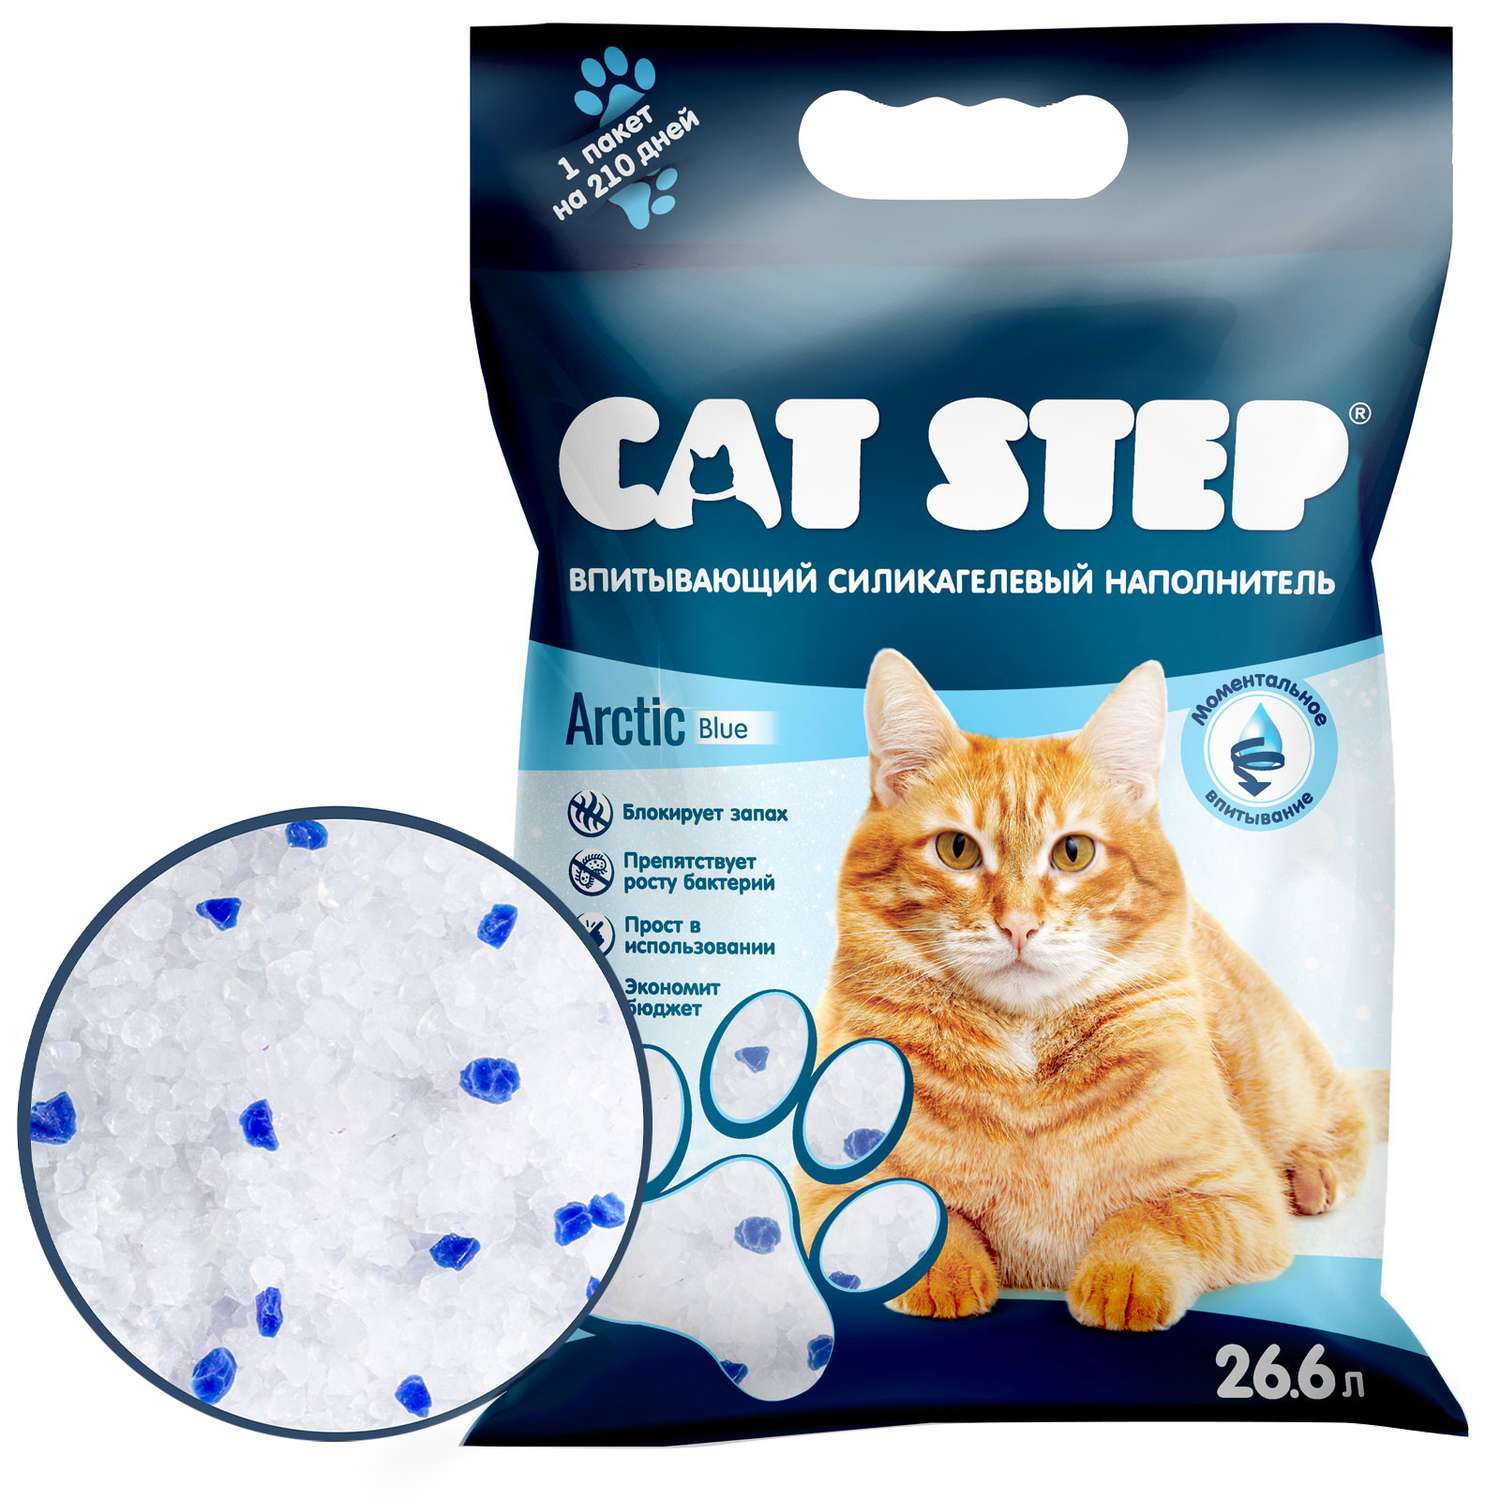 Наполнитель для кошек Cat Step Arctic Blue впитывающий силикагелевый 26.6л - фото 1